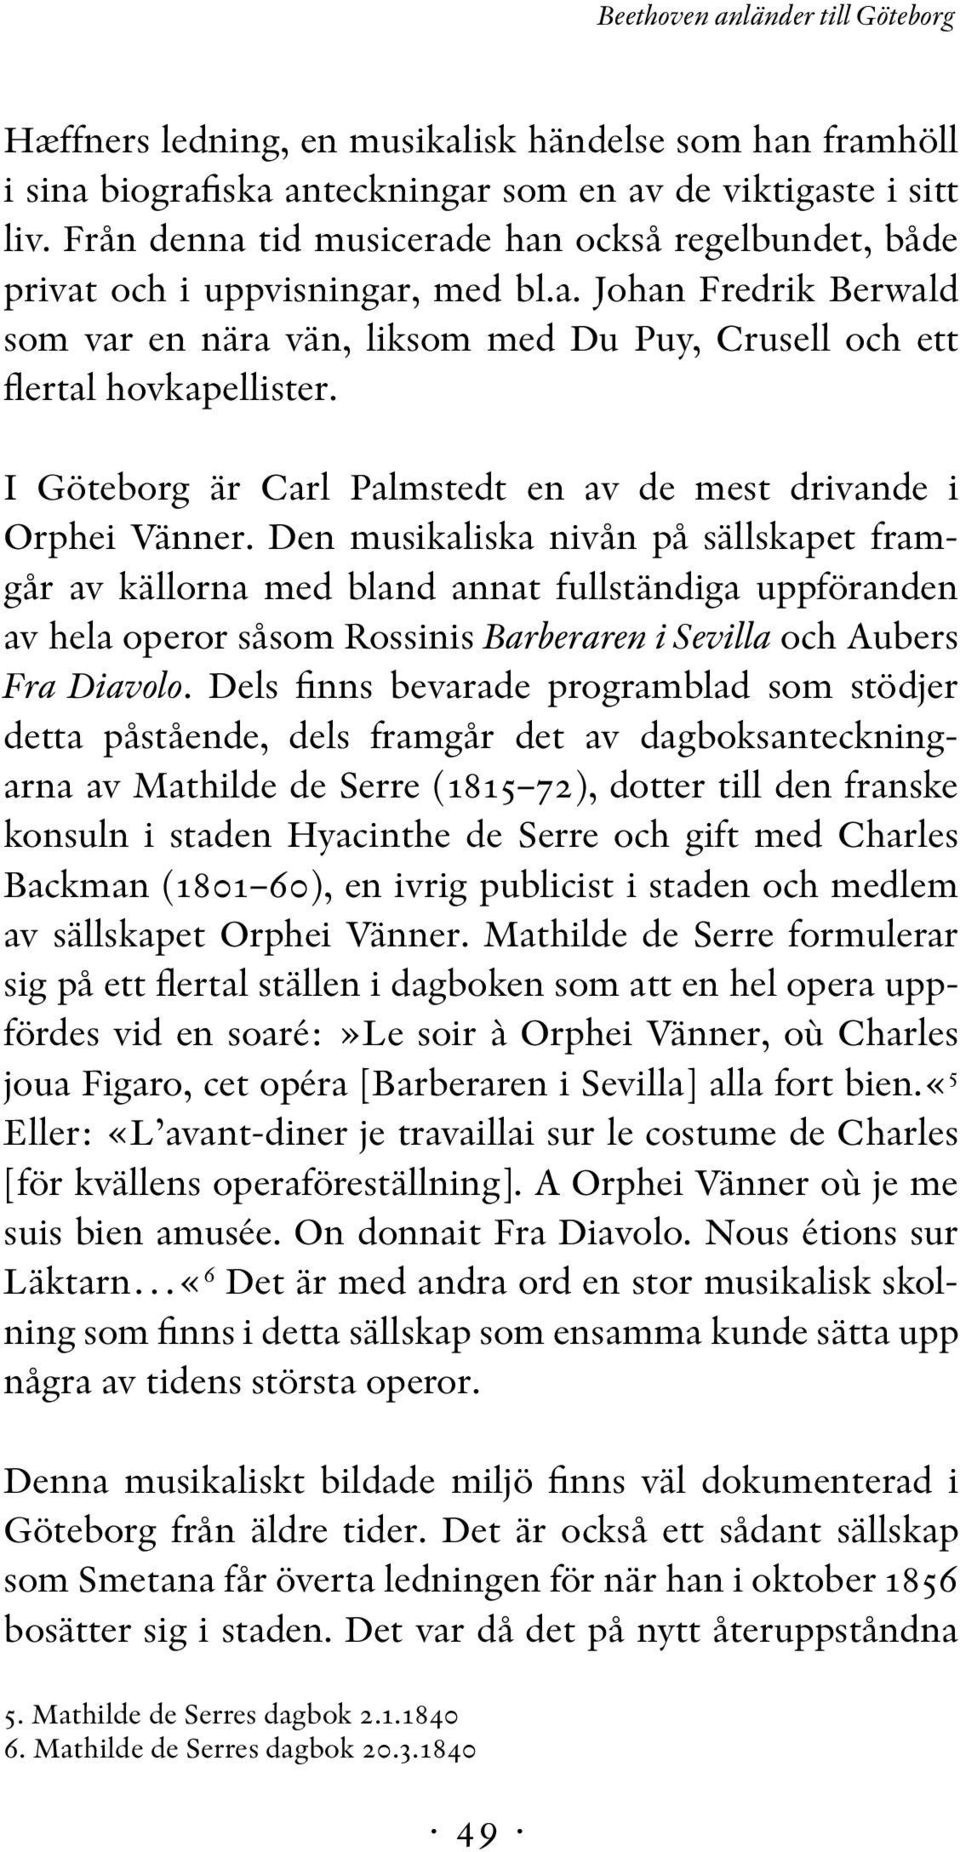 I Göteborg är Carl Palmstedt en av de mest drivande i Orphei Vänner.